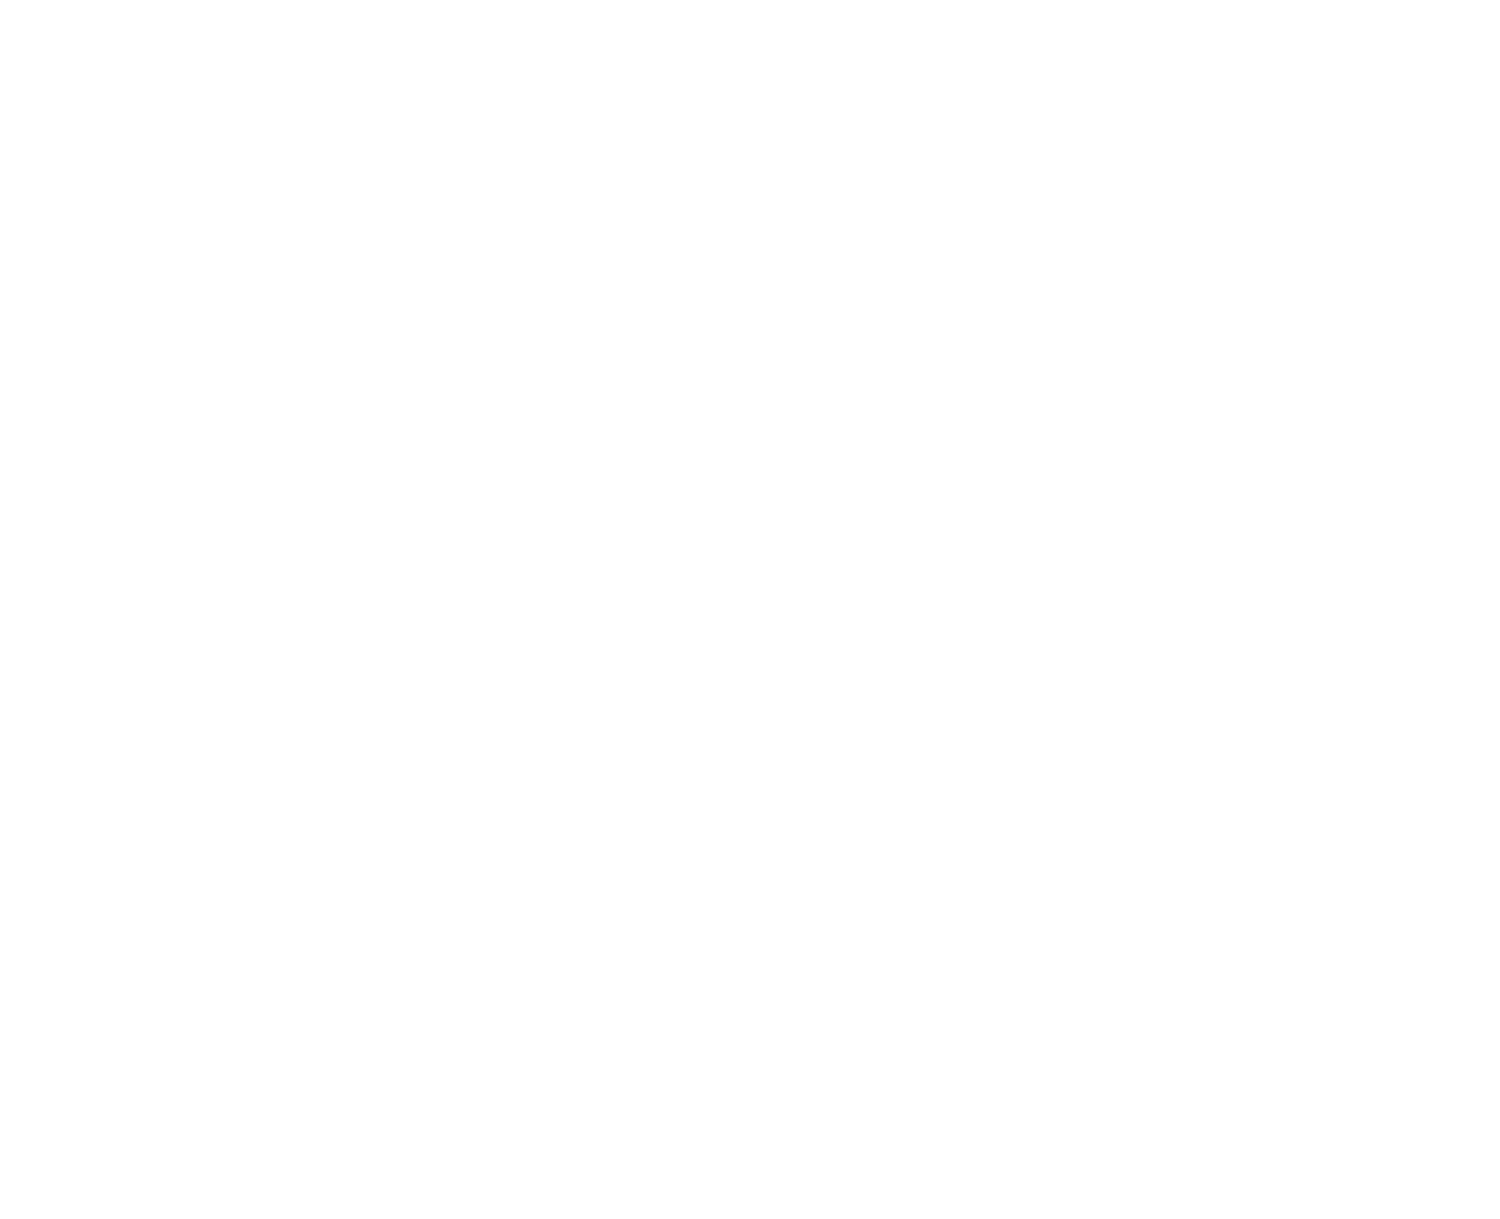 RCFR